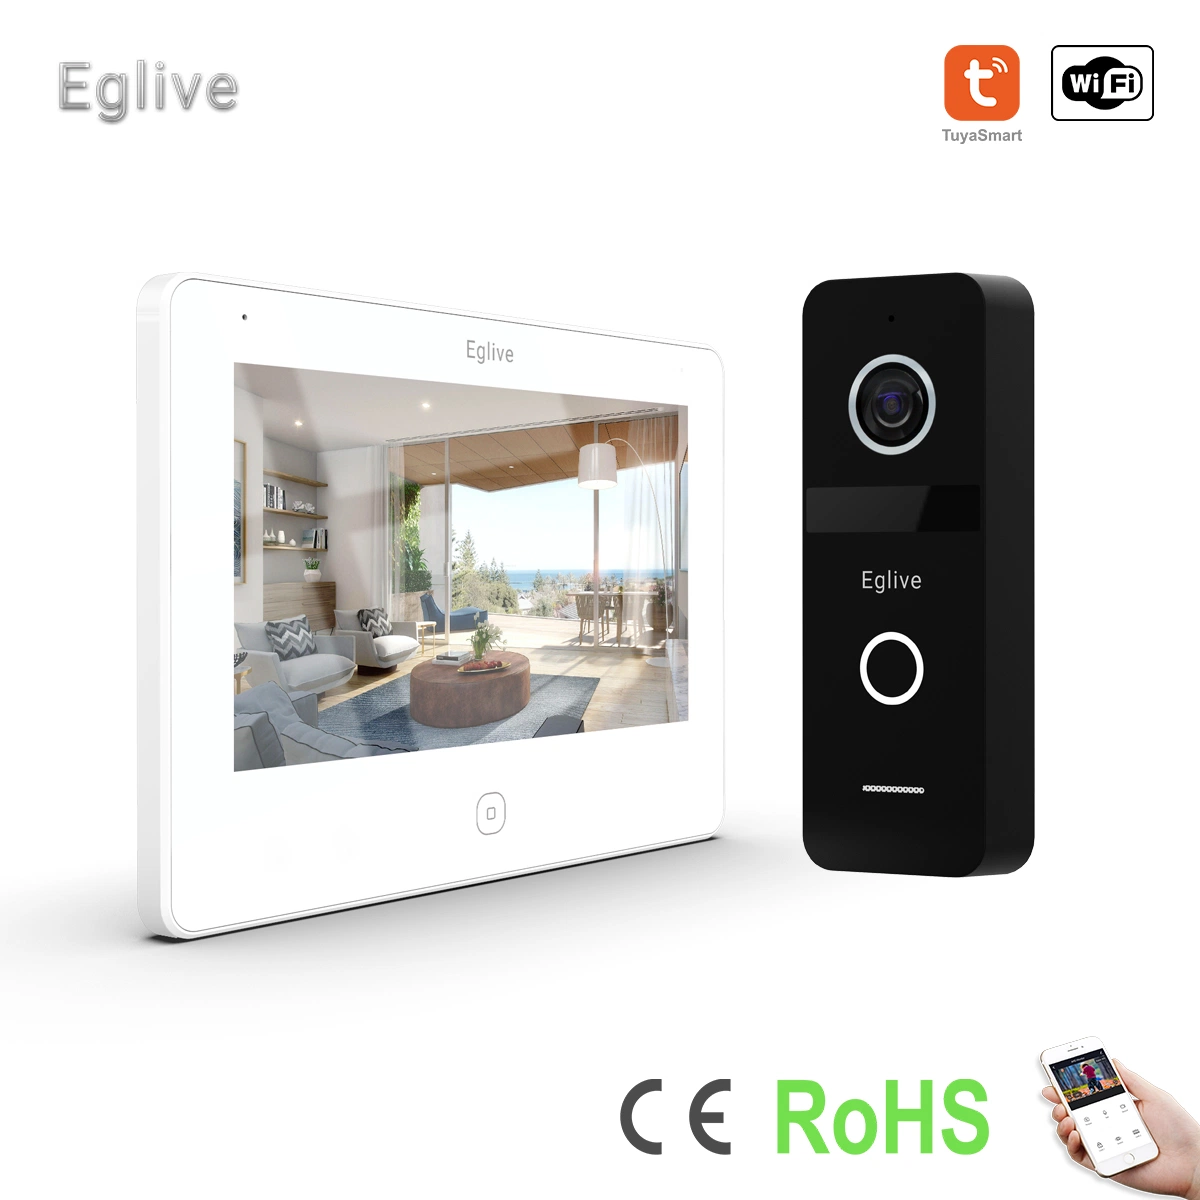 Eglive 7"UTP/IP WiFi Video Doorphone صوت ثنائي الاتجاه يتم التحكم فيه من خلال تطبيق الصوت